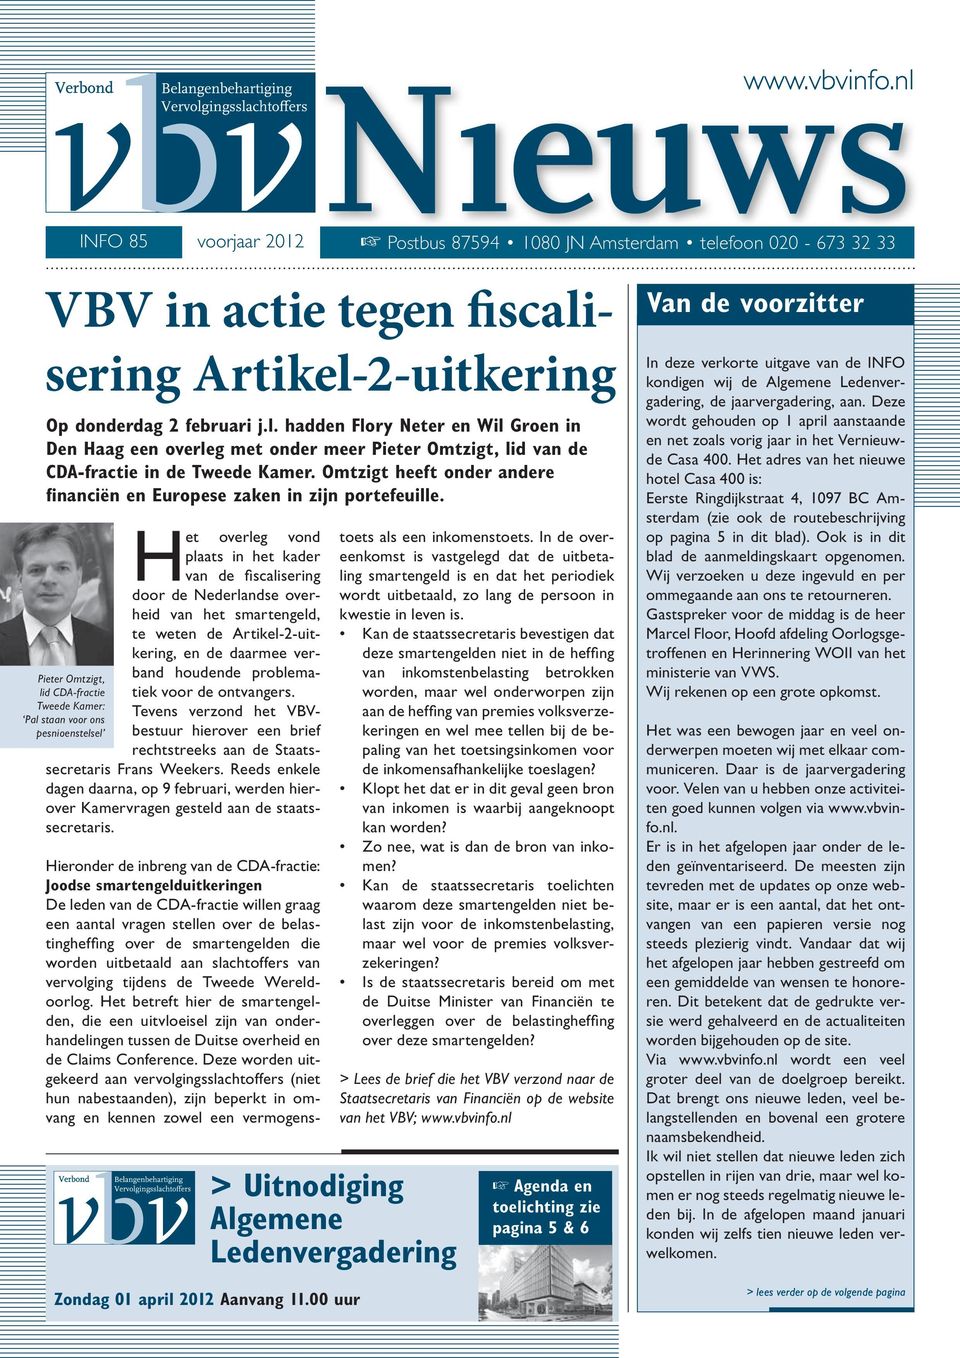 Het overleg vond plaats in het kader van de fiscalisering door de Nederlandse overheid van het smartengeld, te weten de Artikel-2-uitkering, en de daarmee verband houdende problematiek voor de